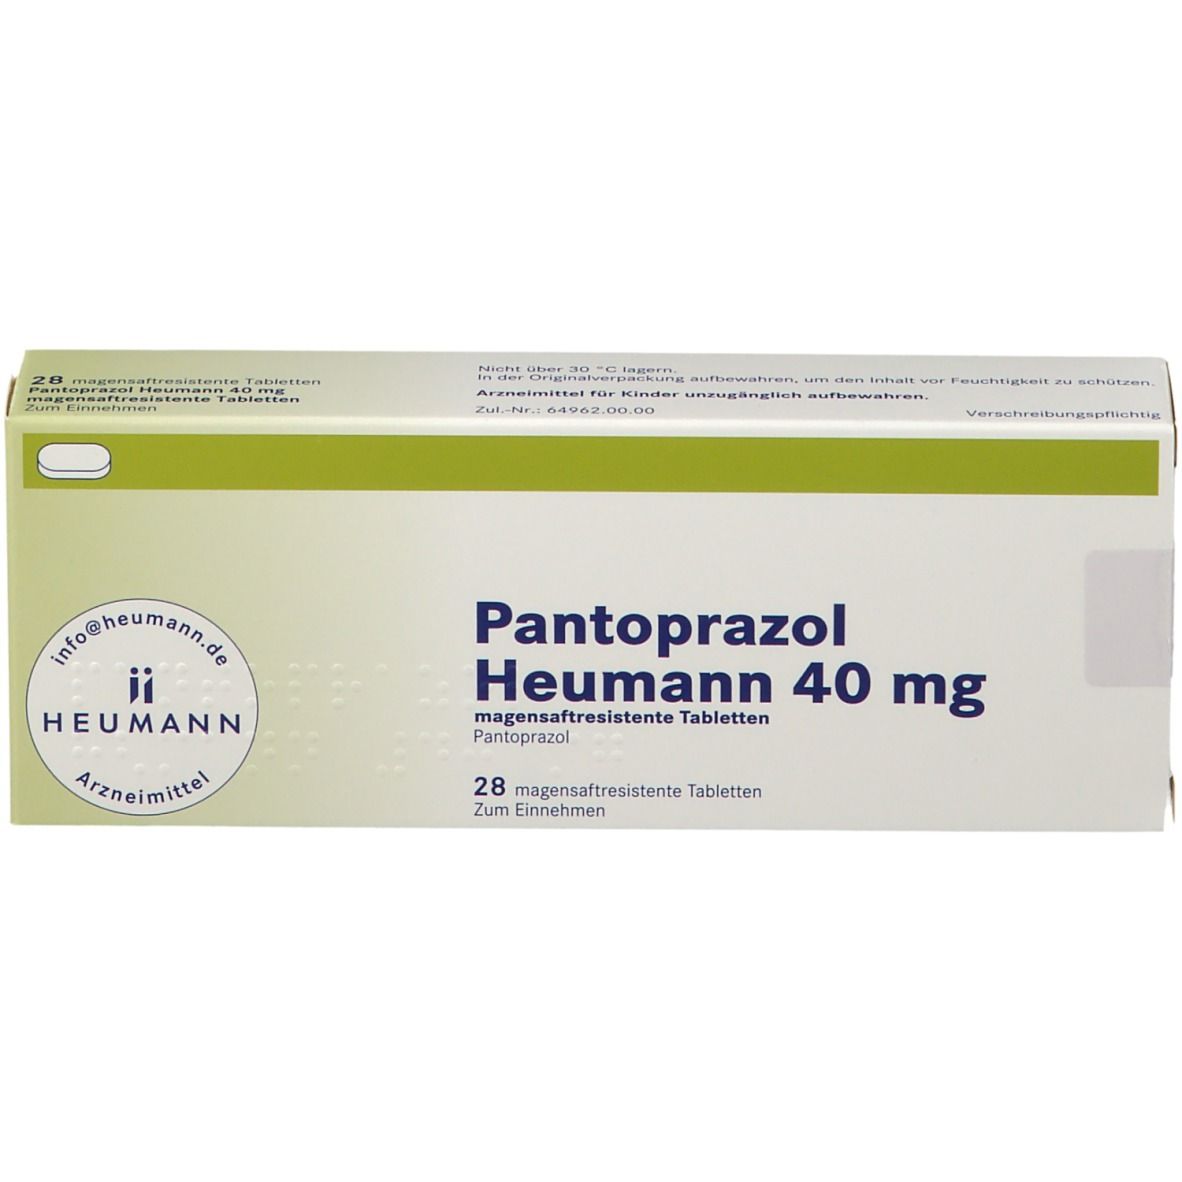 Pantoprazol Heumann 40 mg